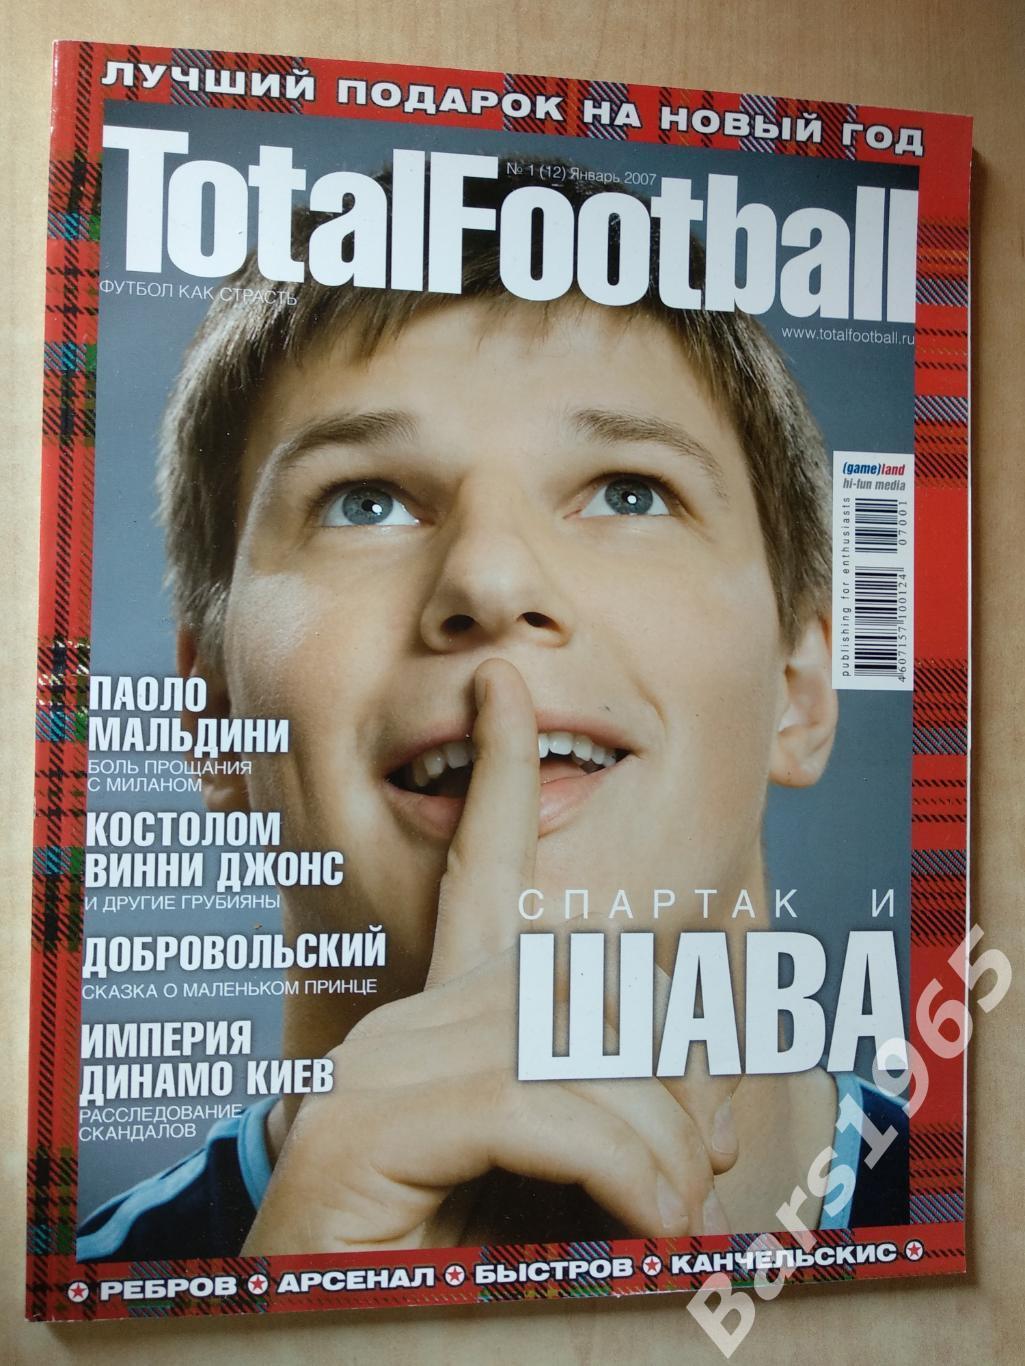 Total Football № 01 (12) 2007 с постером Рауль и Йон-Арне Риисе